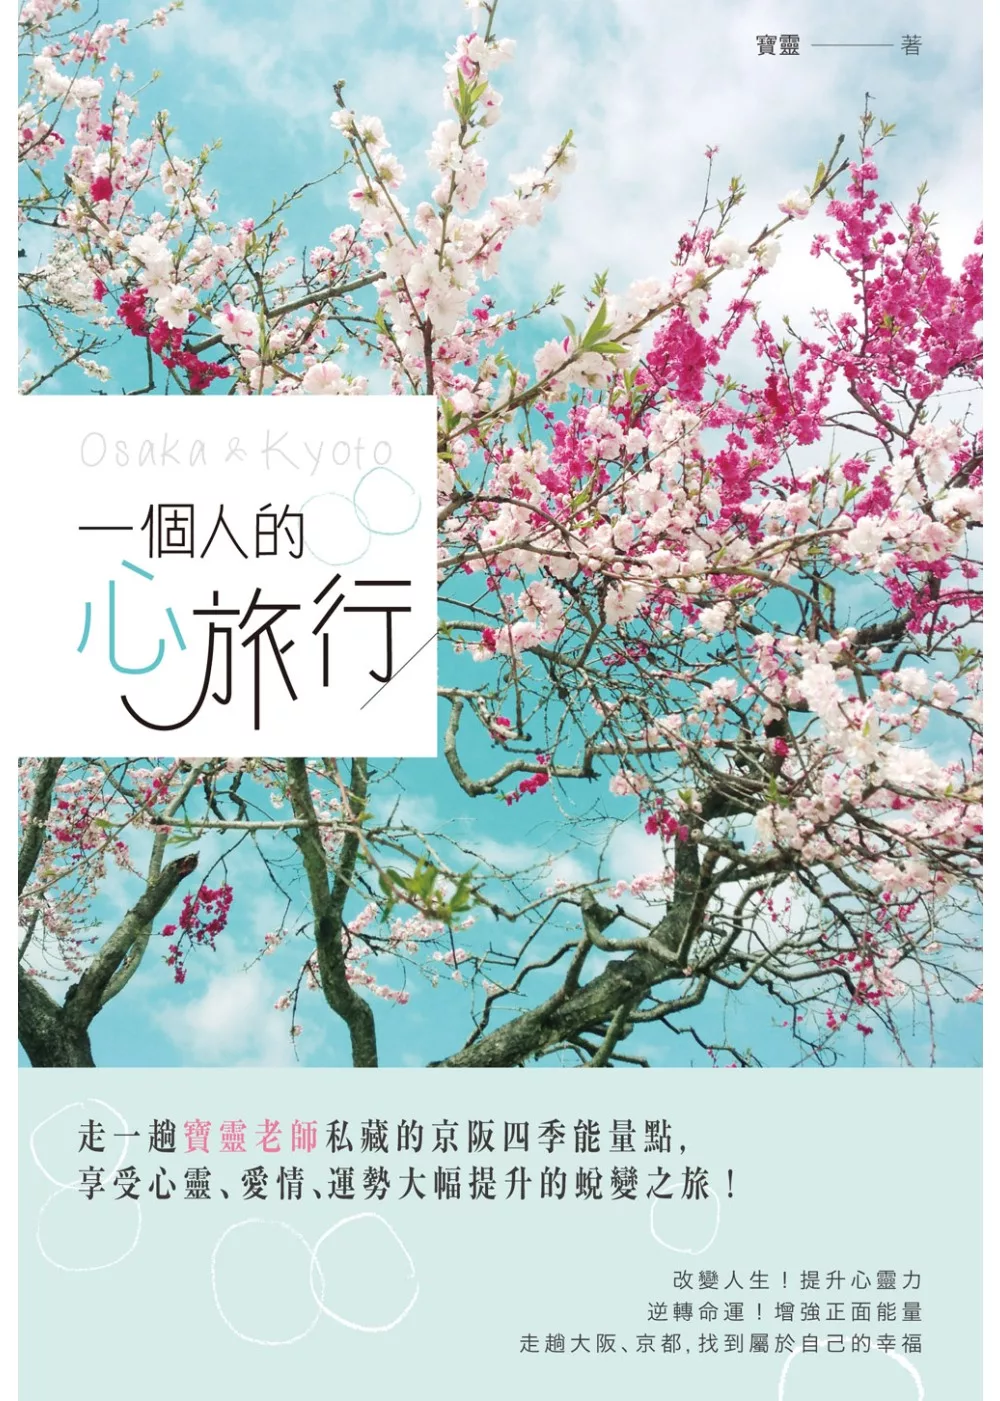 一個人的心旅行：走一趟寶靈老師私藏的京阪四季能量點，享受心靈、愛情、運勢大幅提升的蛻變之旅！